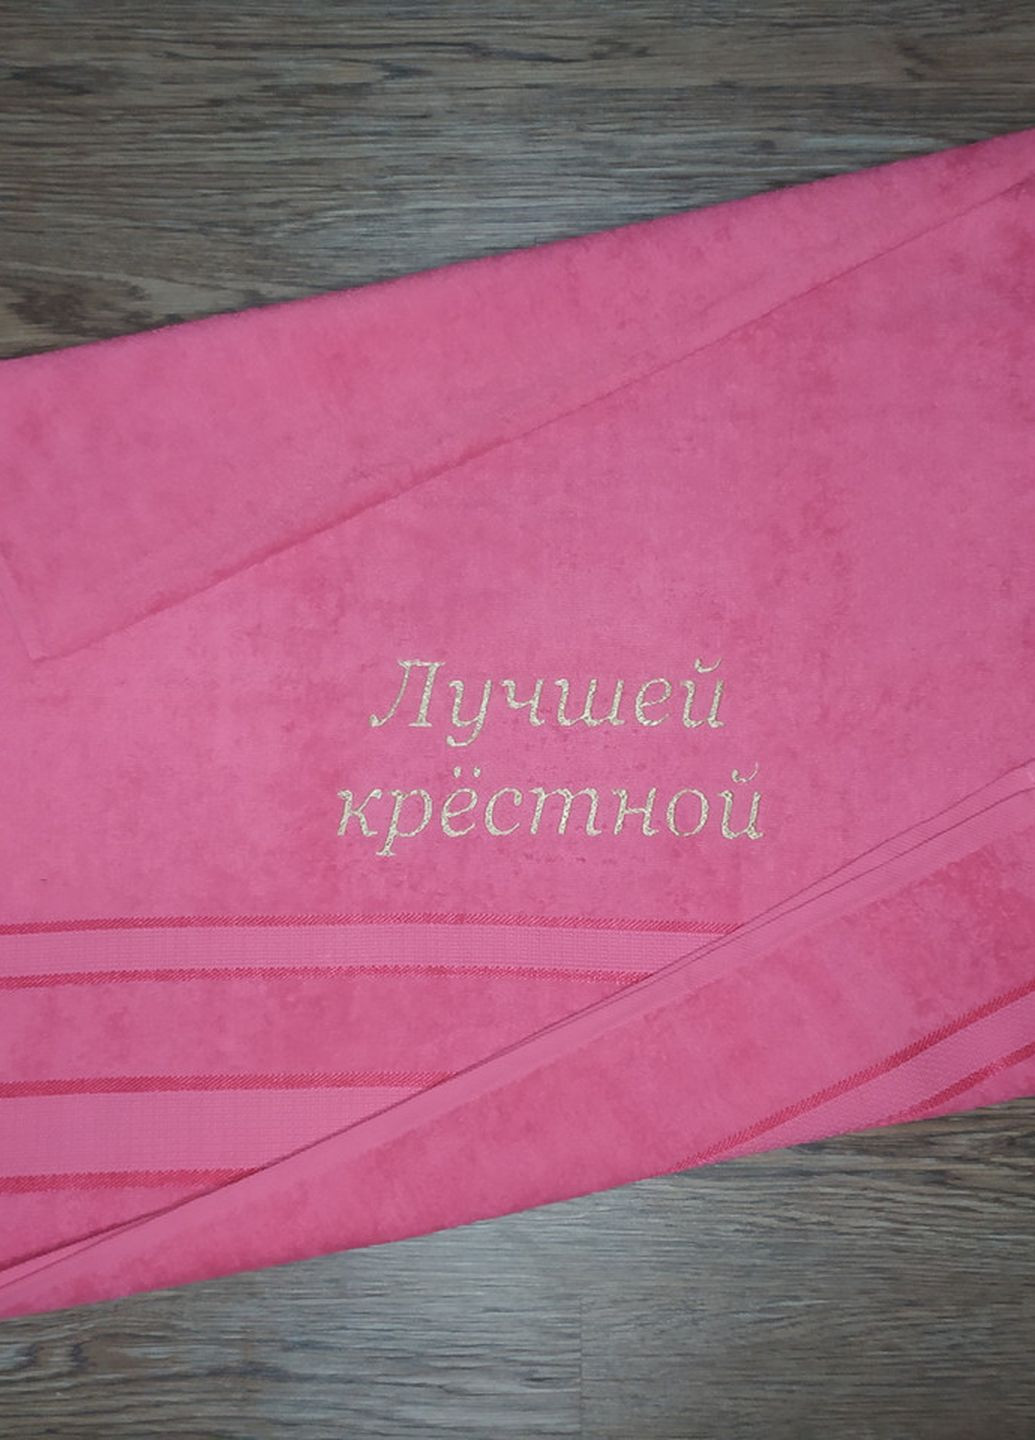 No Brand полотенце с вышивкой махровое лицевое 50*90 коралловый крестной маме куме 00370 однотонный коралловый производство - Украина